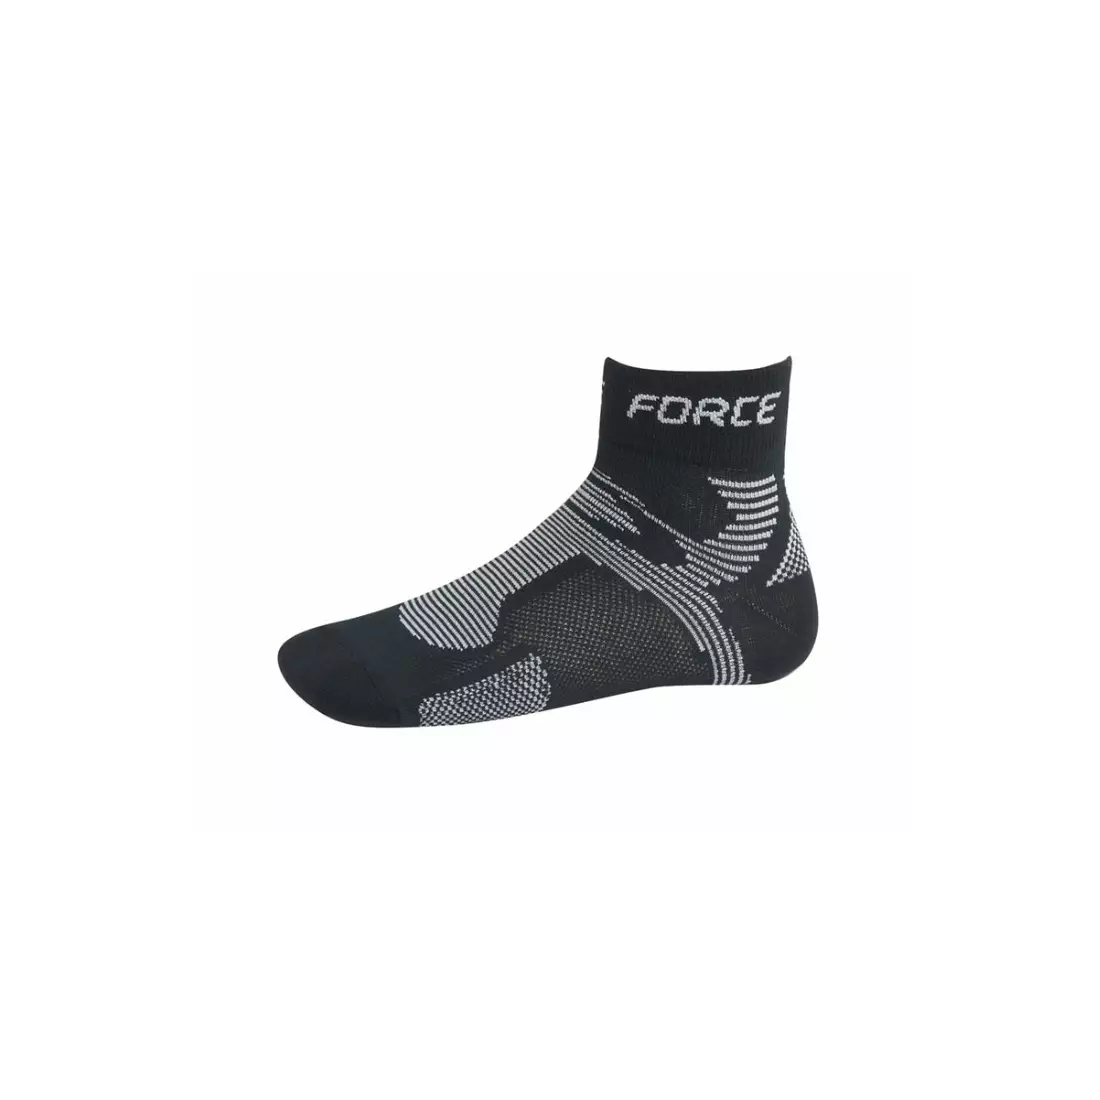 Sportovní ponožky FORCE 2 COOLMAX 901023/901027 - černé a šedé